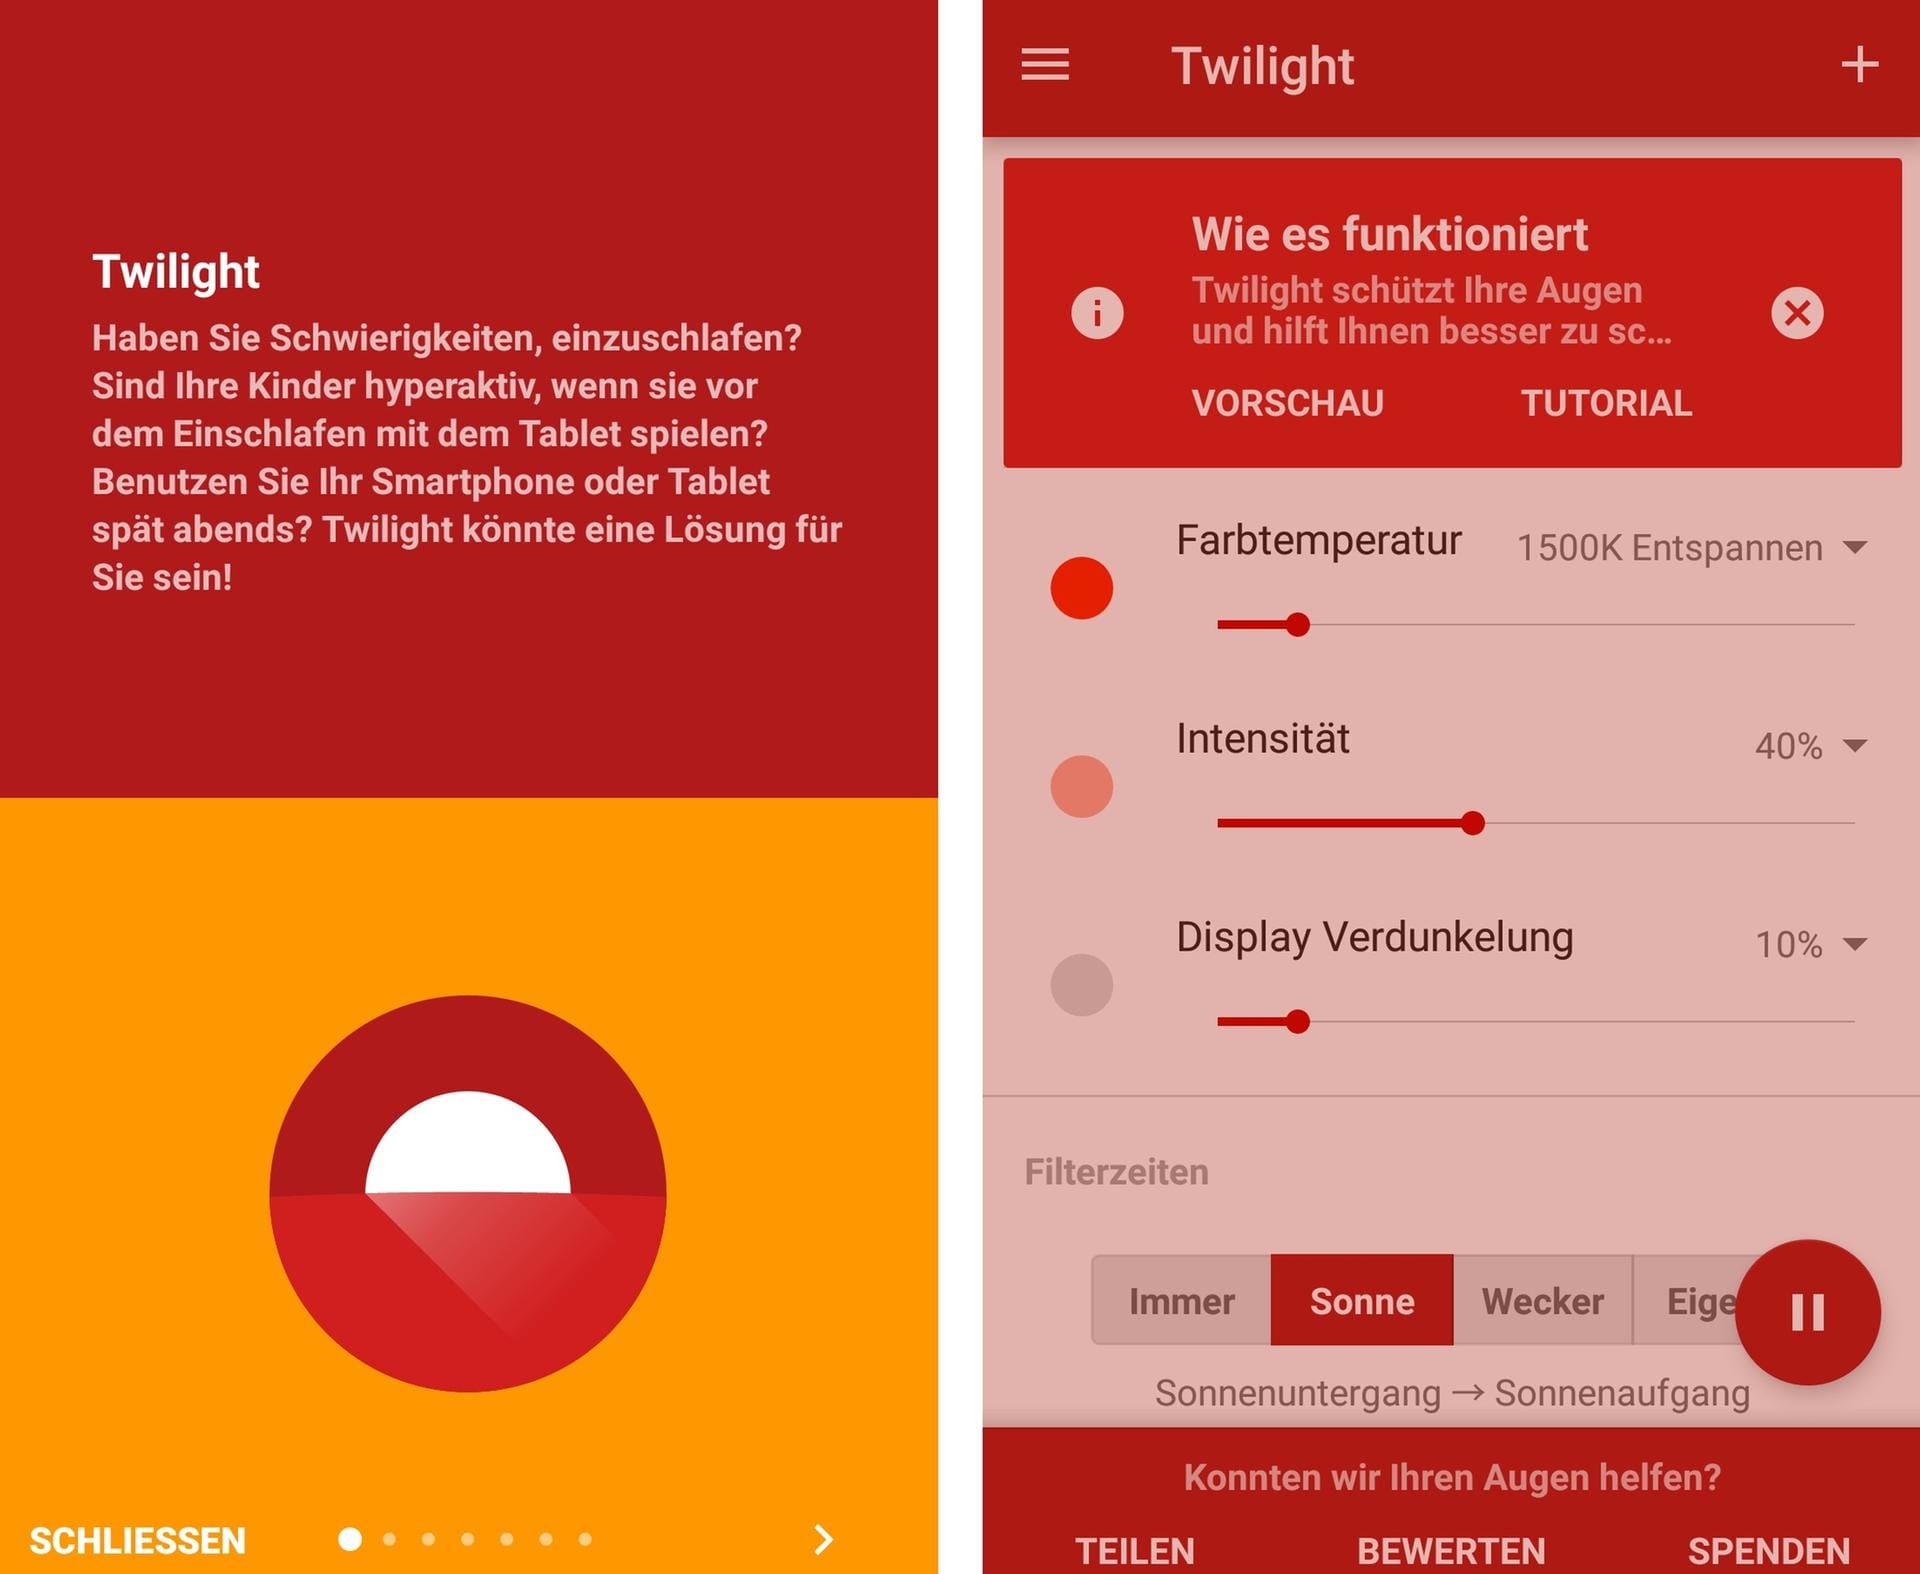 Die App "Twilight" ist im Google Play Store als "Empfehlung der Redaktion" gekennzeichnet. Das Programm erlaubt, verschiedene Farbtemperaturen, die Intensität sowie eine Display-Verdunkelung einzustellen. Die Filterzeiten passen sich an den Sonnenzyklus des Standortes an. Dazu braucht die App aber Standort-Berechtigung. Alternativ lassen sich eigene Zeiten festlegen. Wer die intelligente Glühbirne "Philipps HUE" besitzt, kann zudem mit der App die Farbintensität der Lampen steuern.